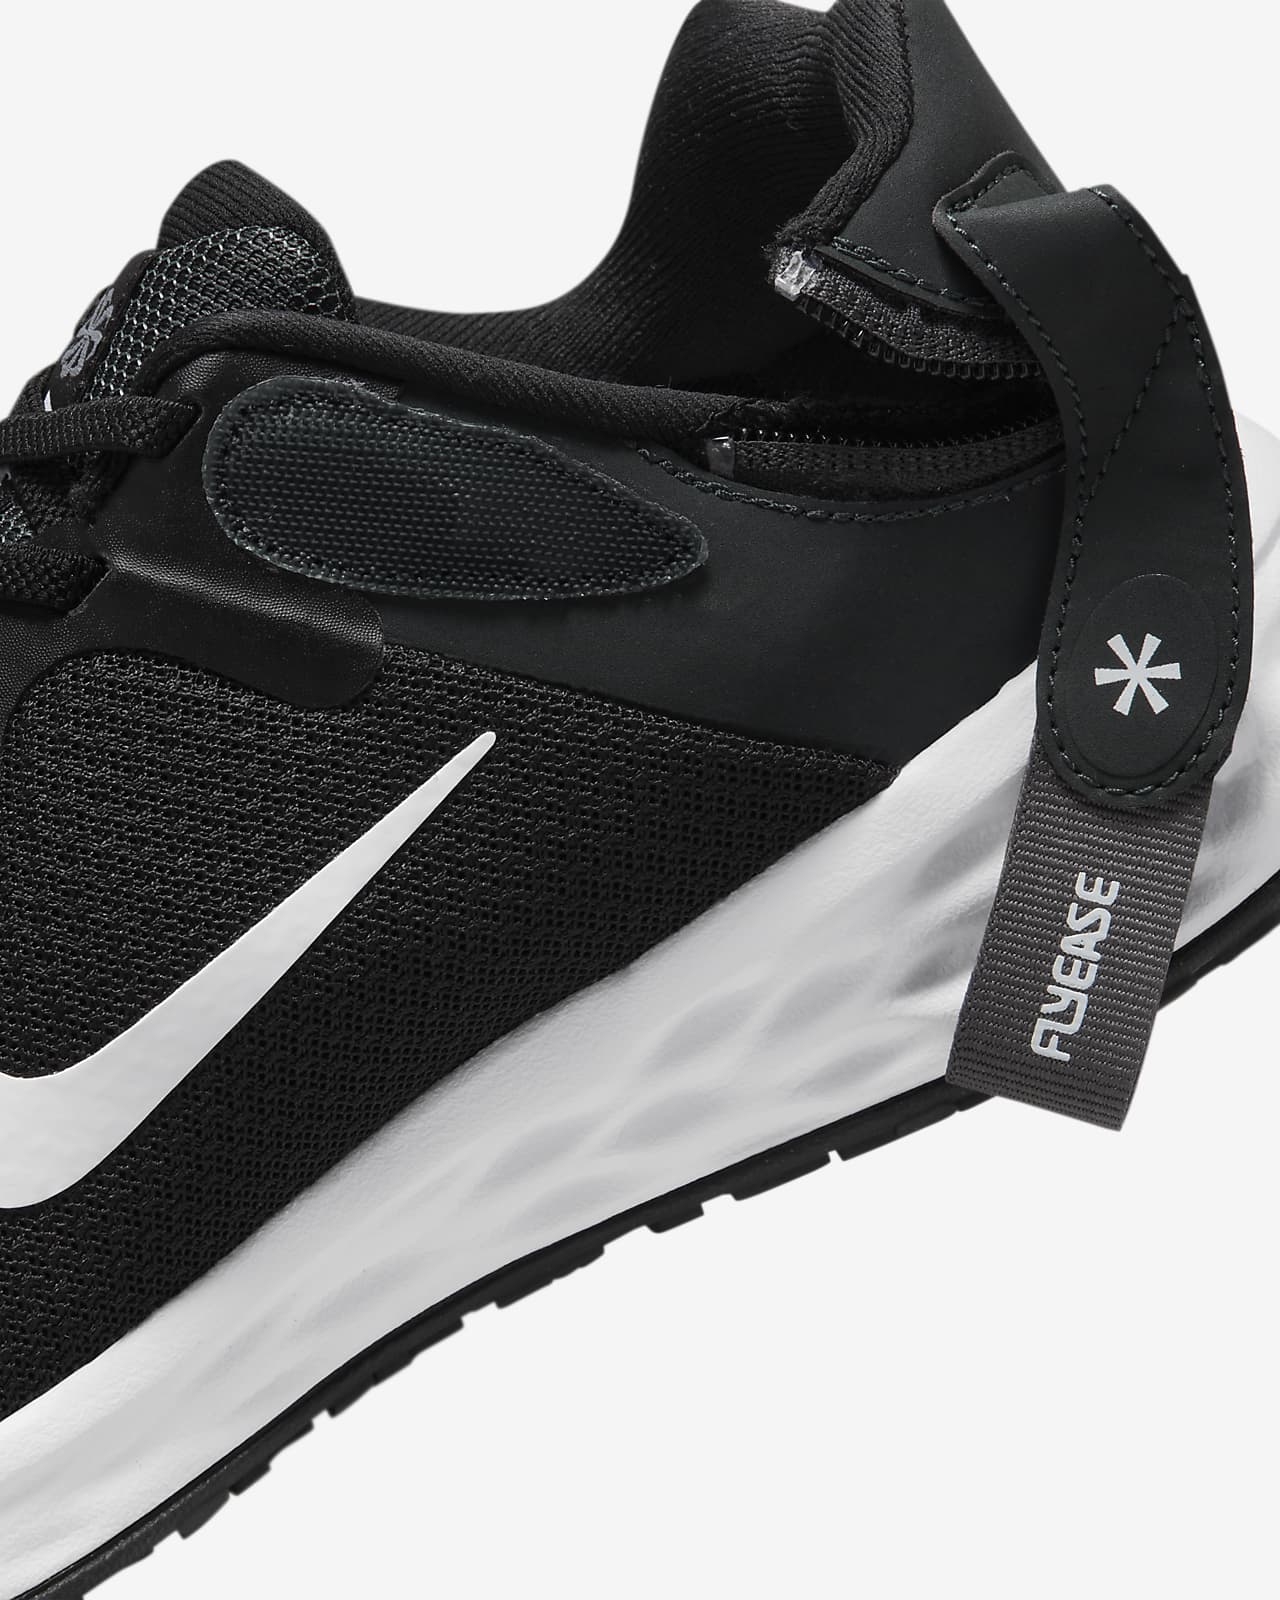 Revolution 6 FlyEase Next Zapatillas de running para asfalto fáciles de poner y quitar (anchas) - Mujer. Nike ES